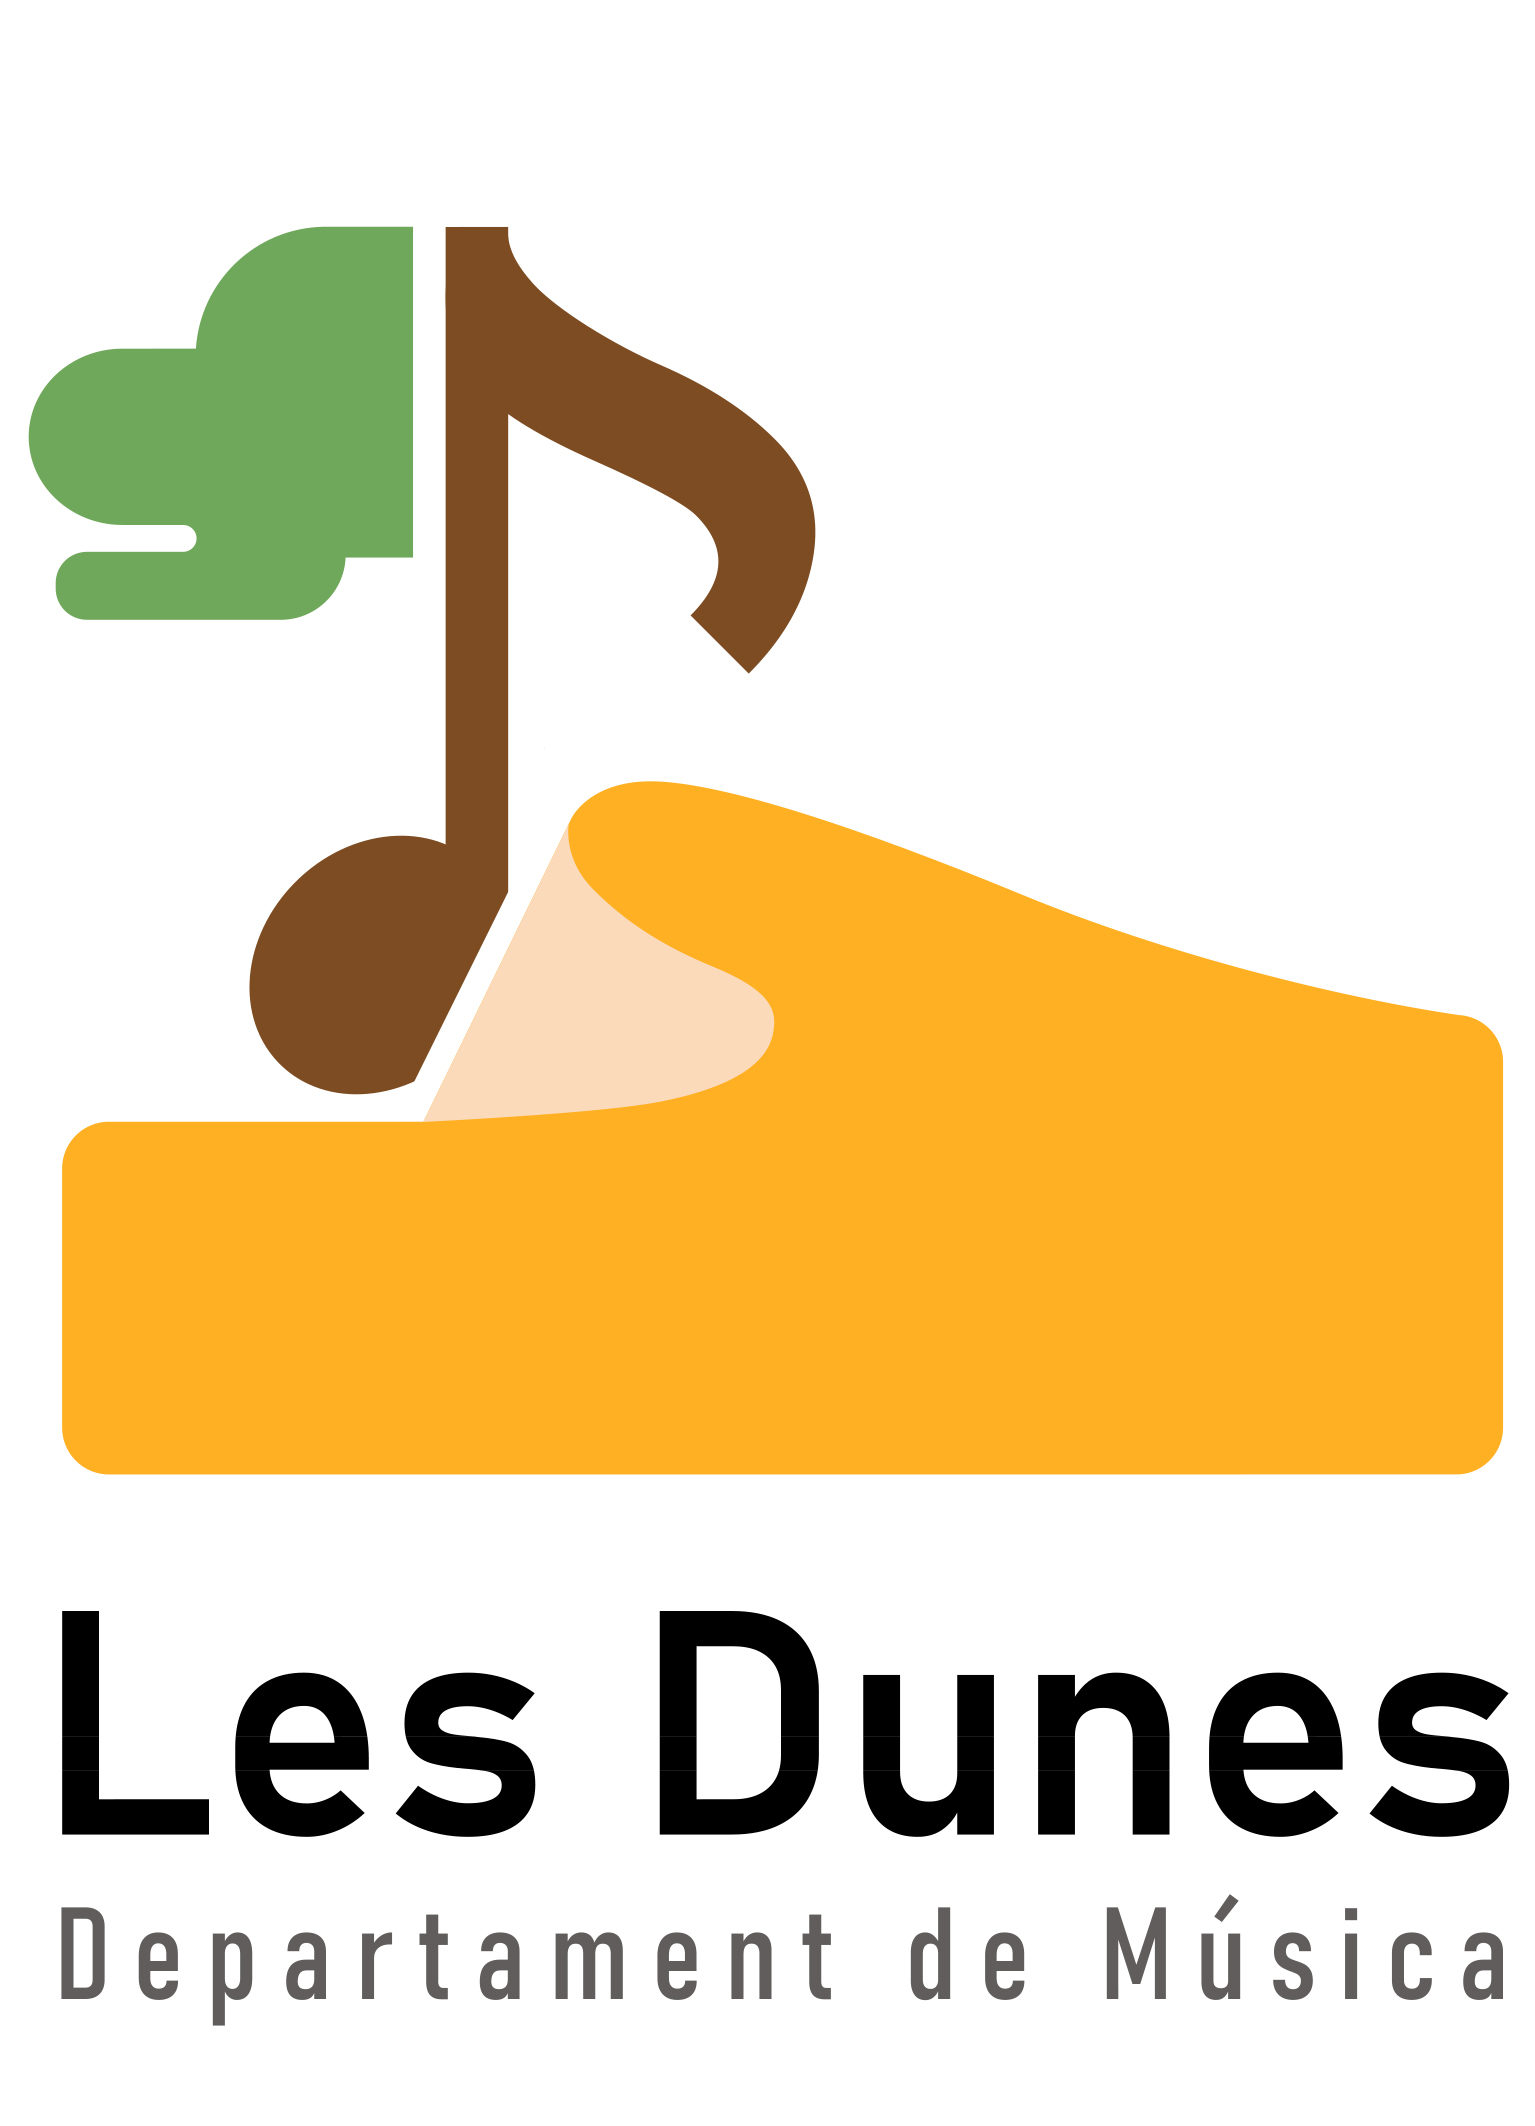 Música Les Dunes